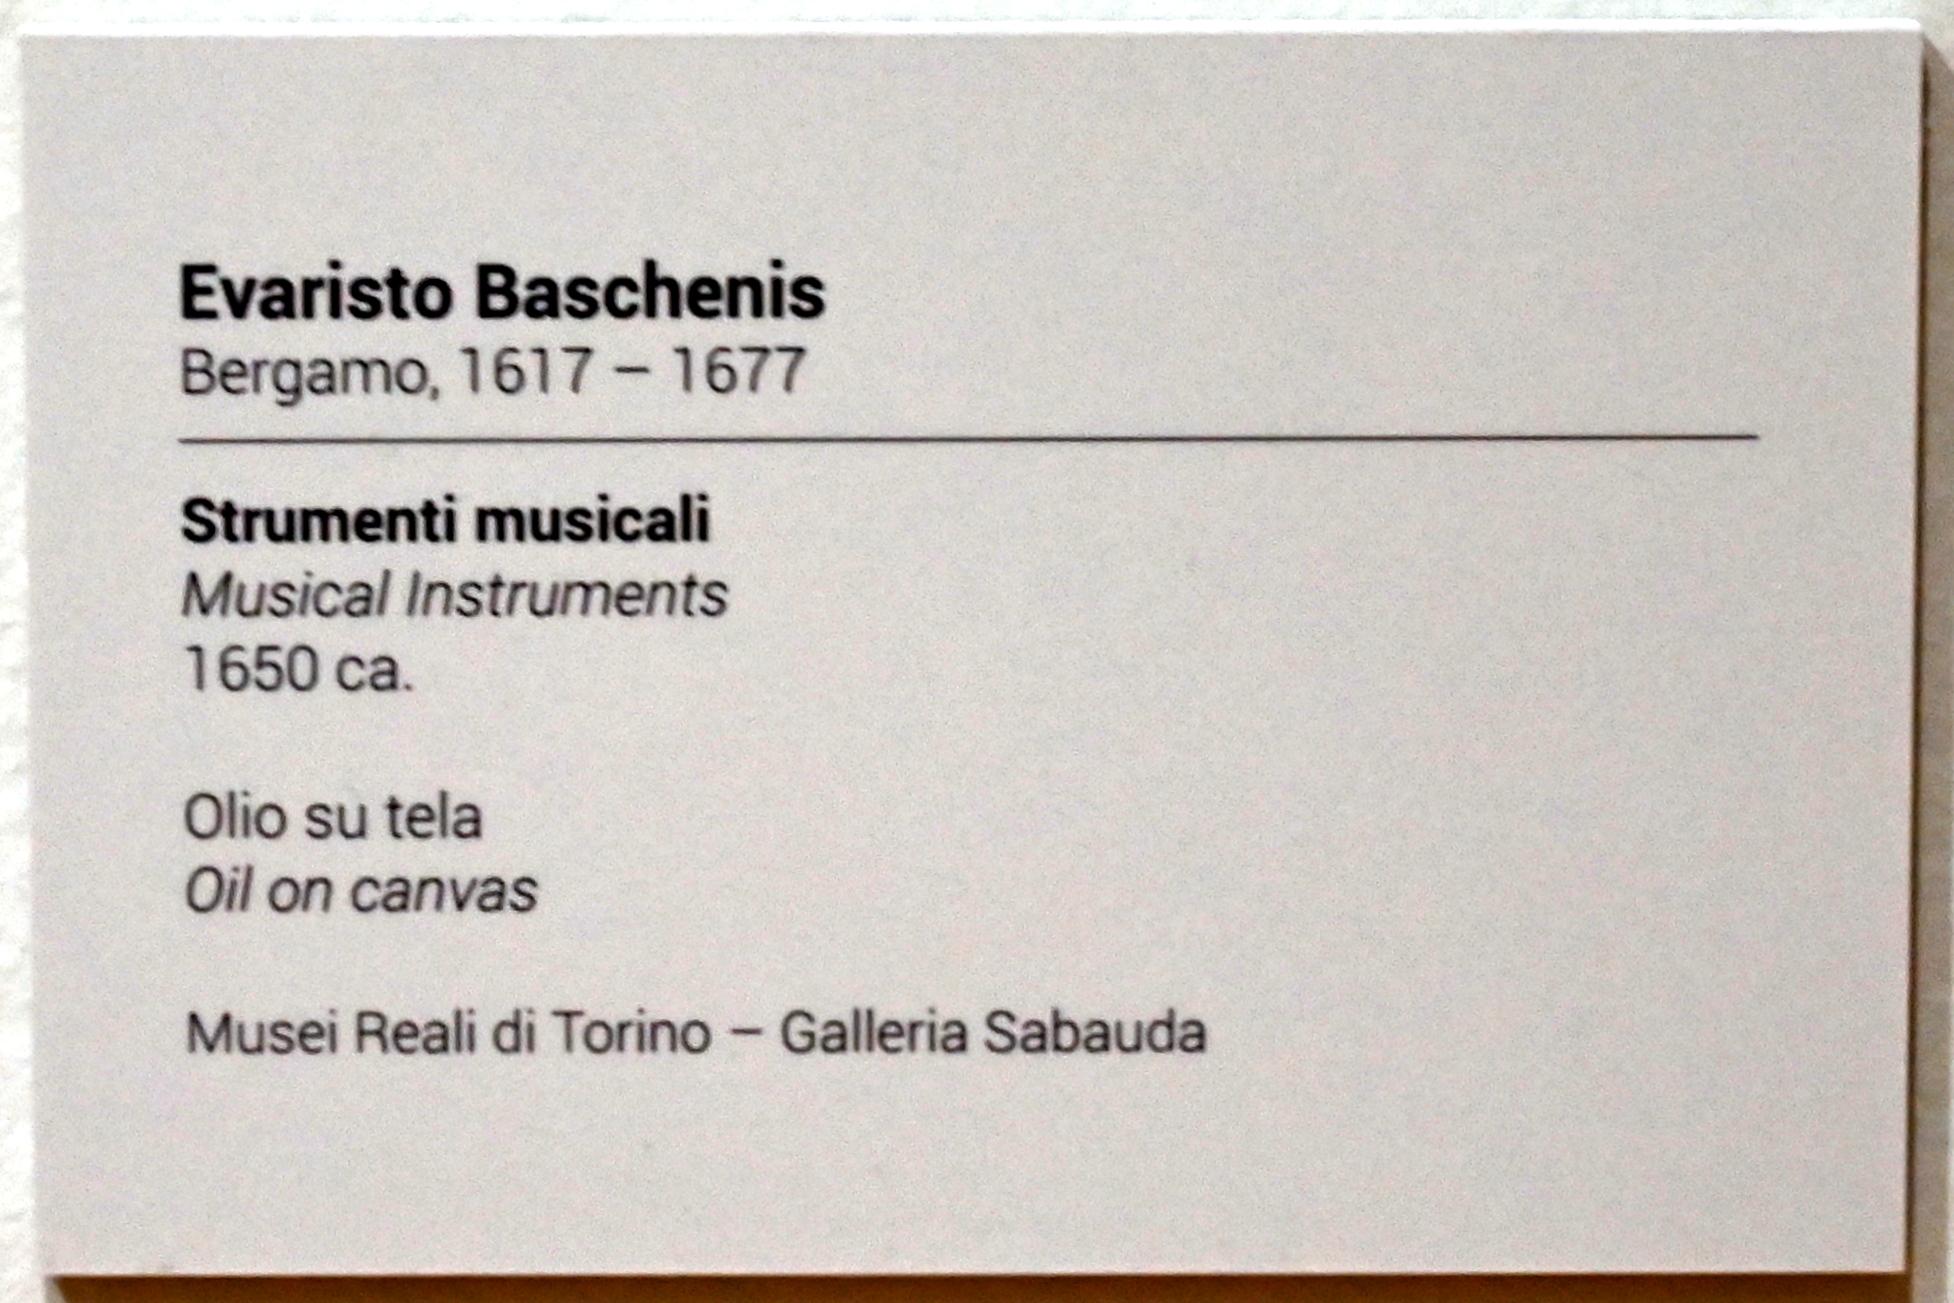 Evaristo Baschenis (1650), Musikinstrumente, Turin, GAM Torino, Ausstellung "Eine Reise gegen den Strom" vom 05.05.-12.09.2021, Saal 6, um 1650, Bild 2/4